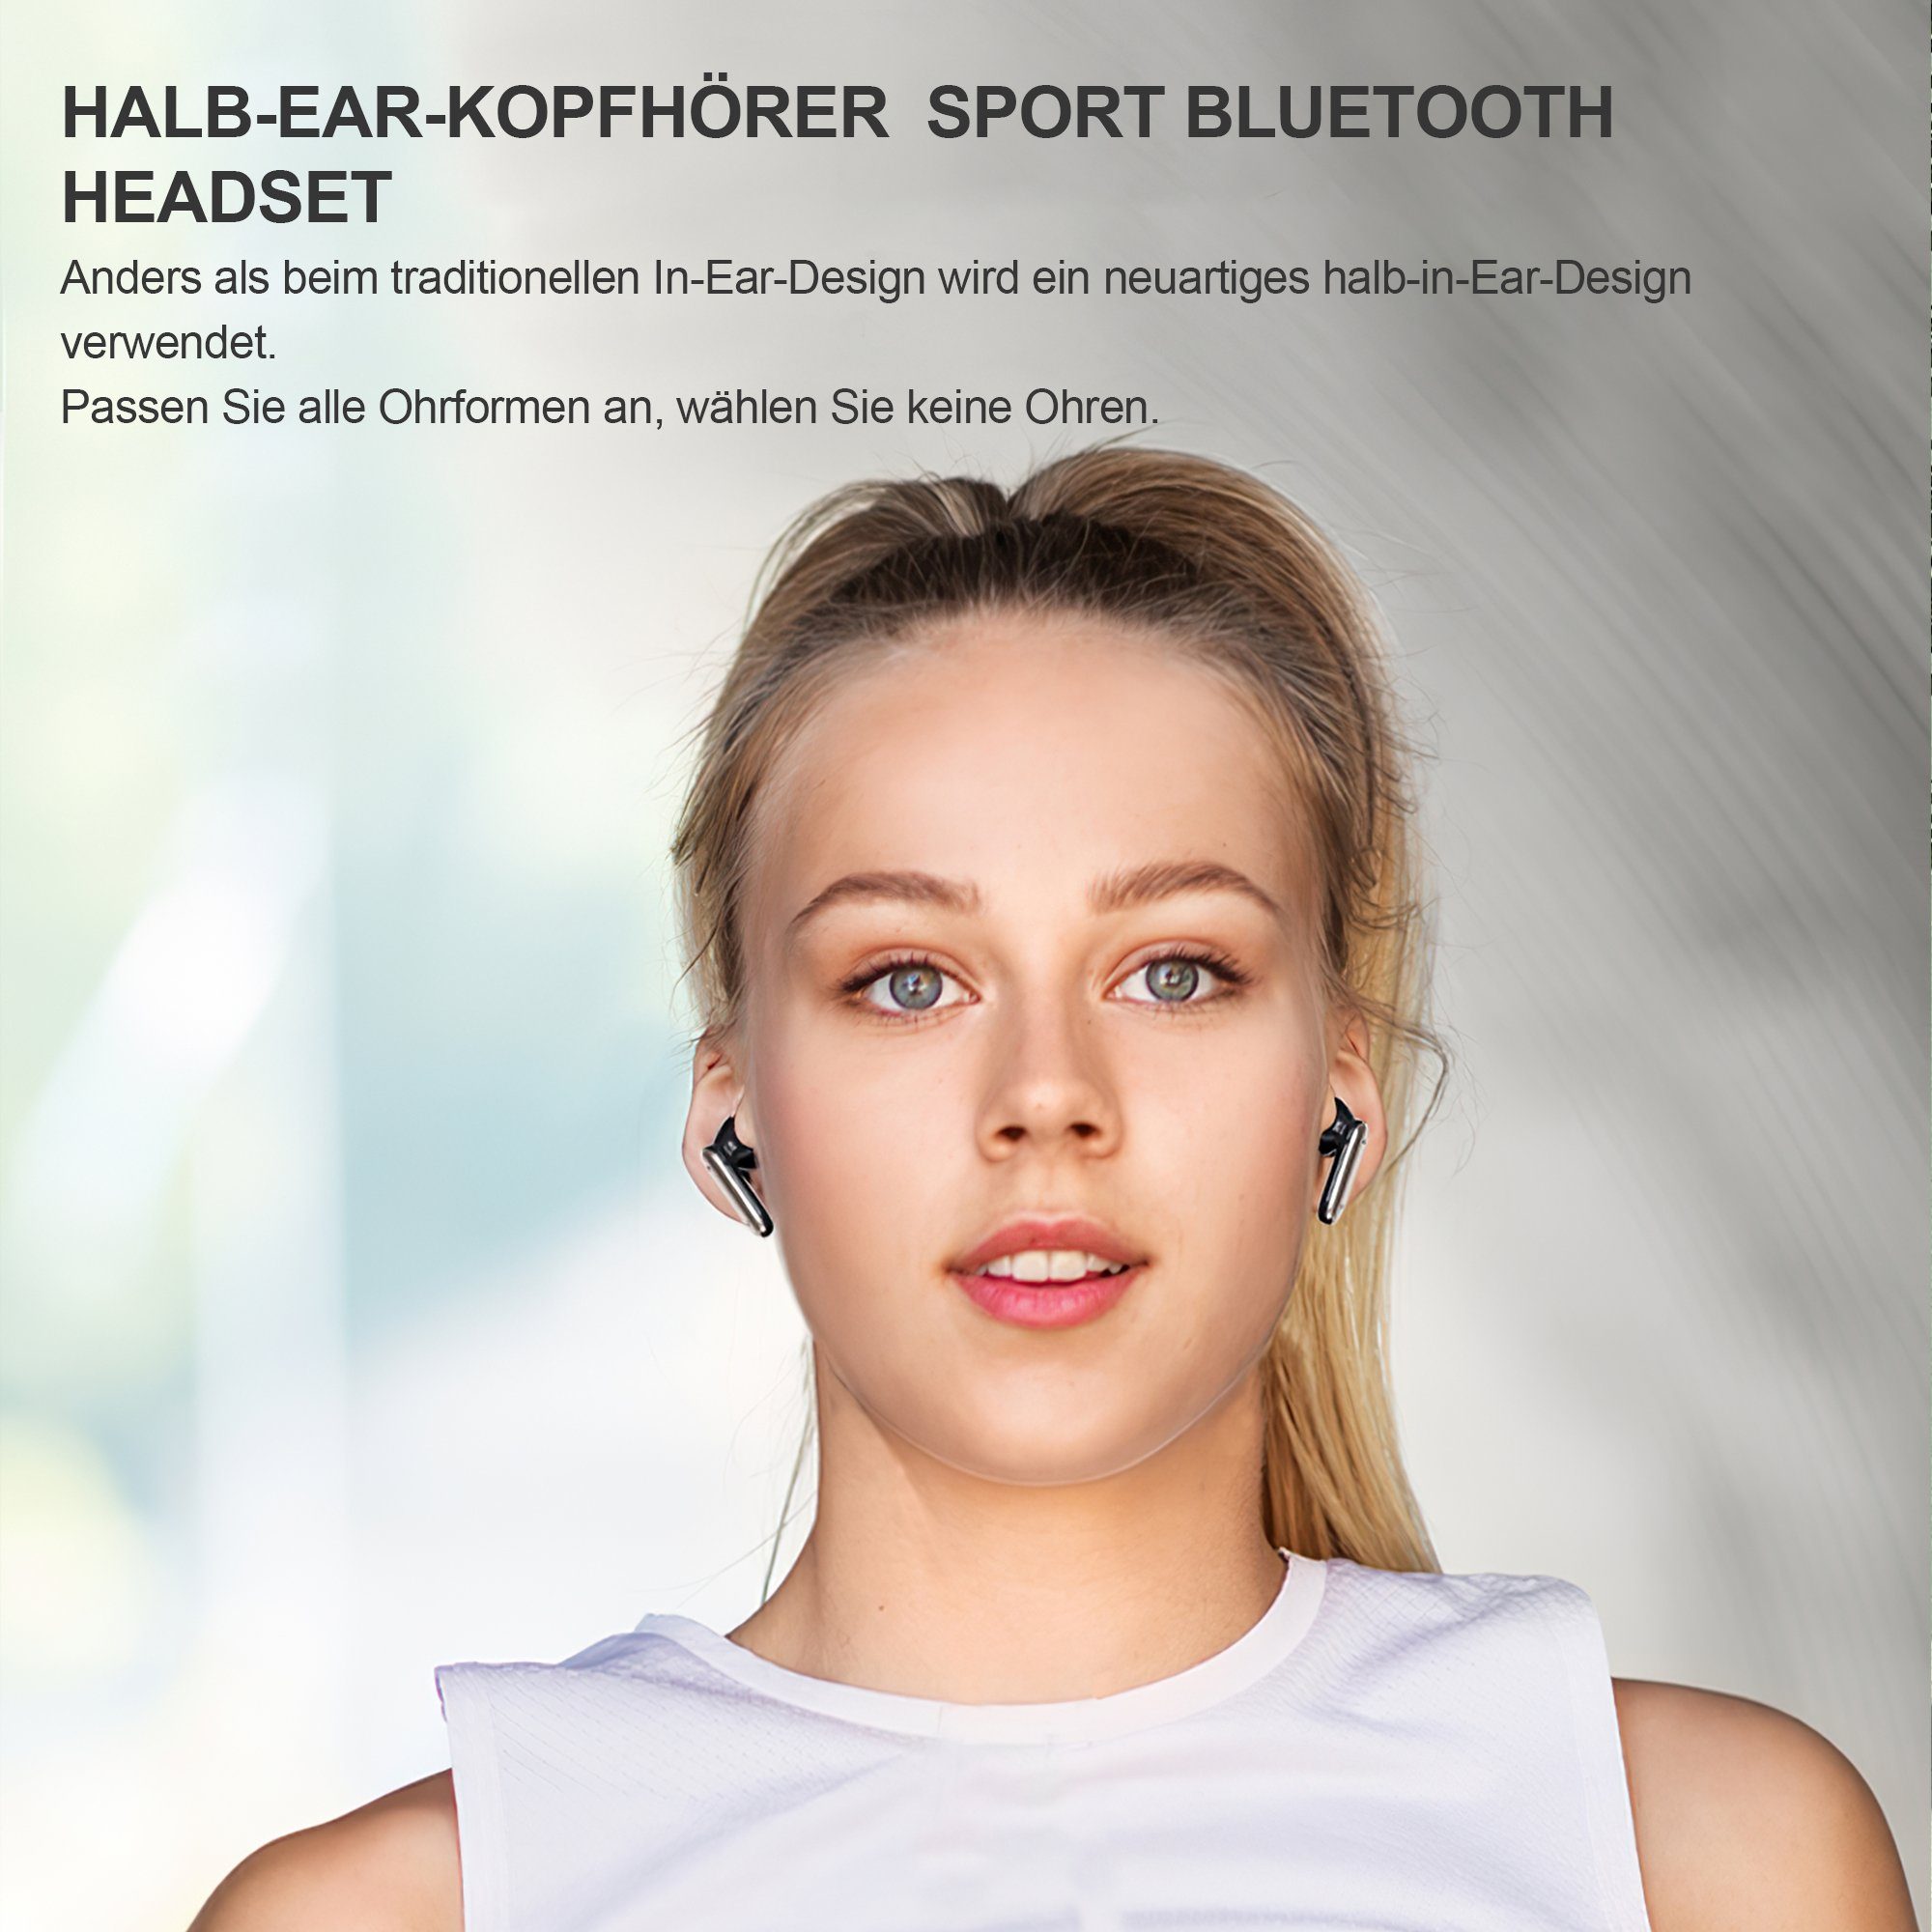 Tisoutec Bluetooth Kopfhörer,Kopfhörer Kabellos Bluetooth Earbuds Kopfhörer 4 Wasserdicht mit wasserdichte Ohrhörer,Tiefer ENC Deep Bestseller Kopfhörer white Mikrofon,2023 Kopfhörer In Cancelling Ear Ohrhörer, Bass,Bluetooth derselbe Kabellose for IPX7 In-Ear-Kopfhörer Bass,USB-C,IP7 40H Neue Sport) mit Noise 5.3 (AMA